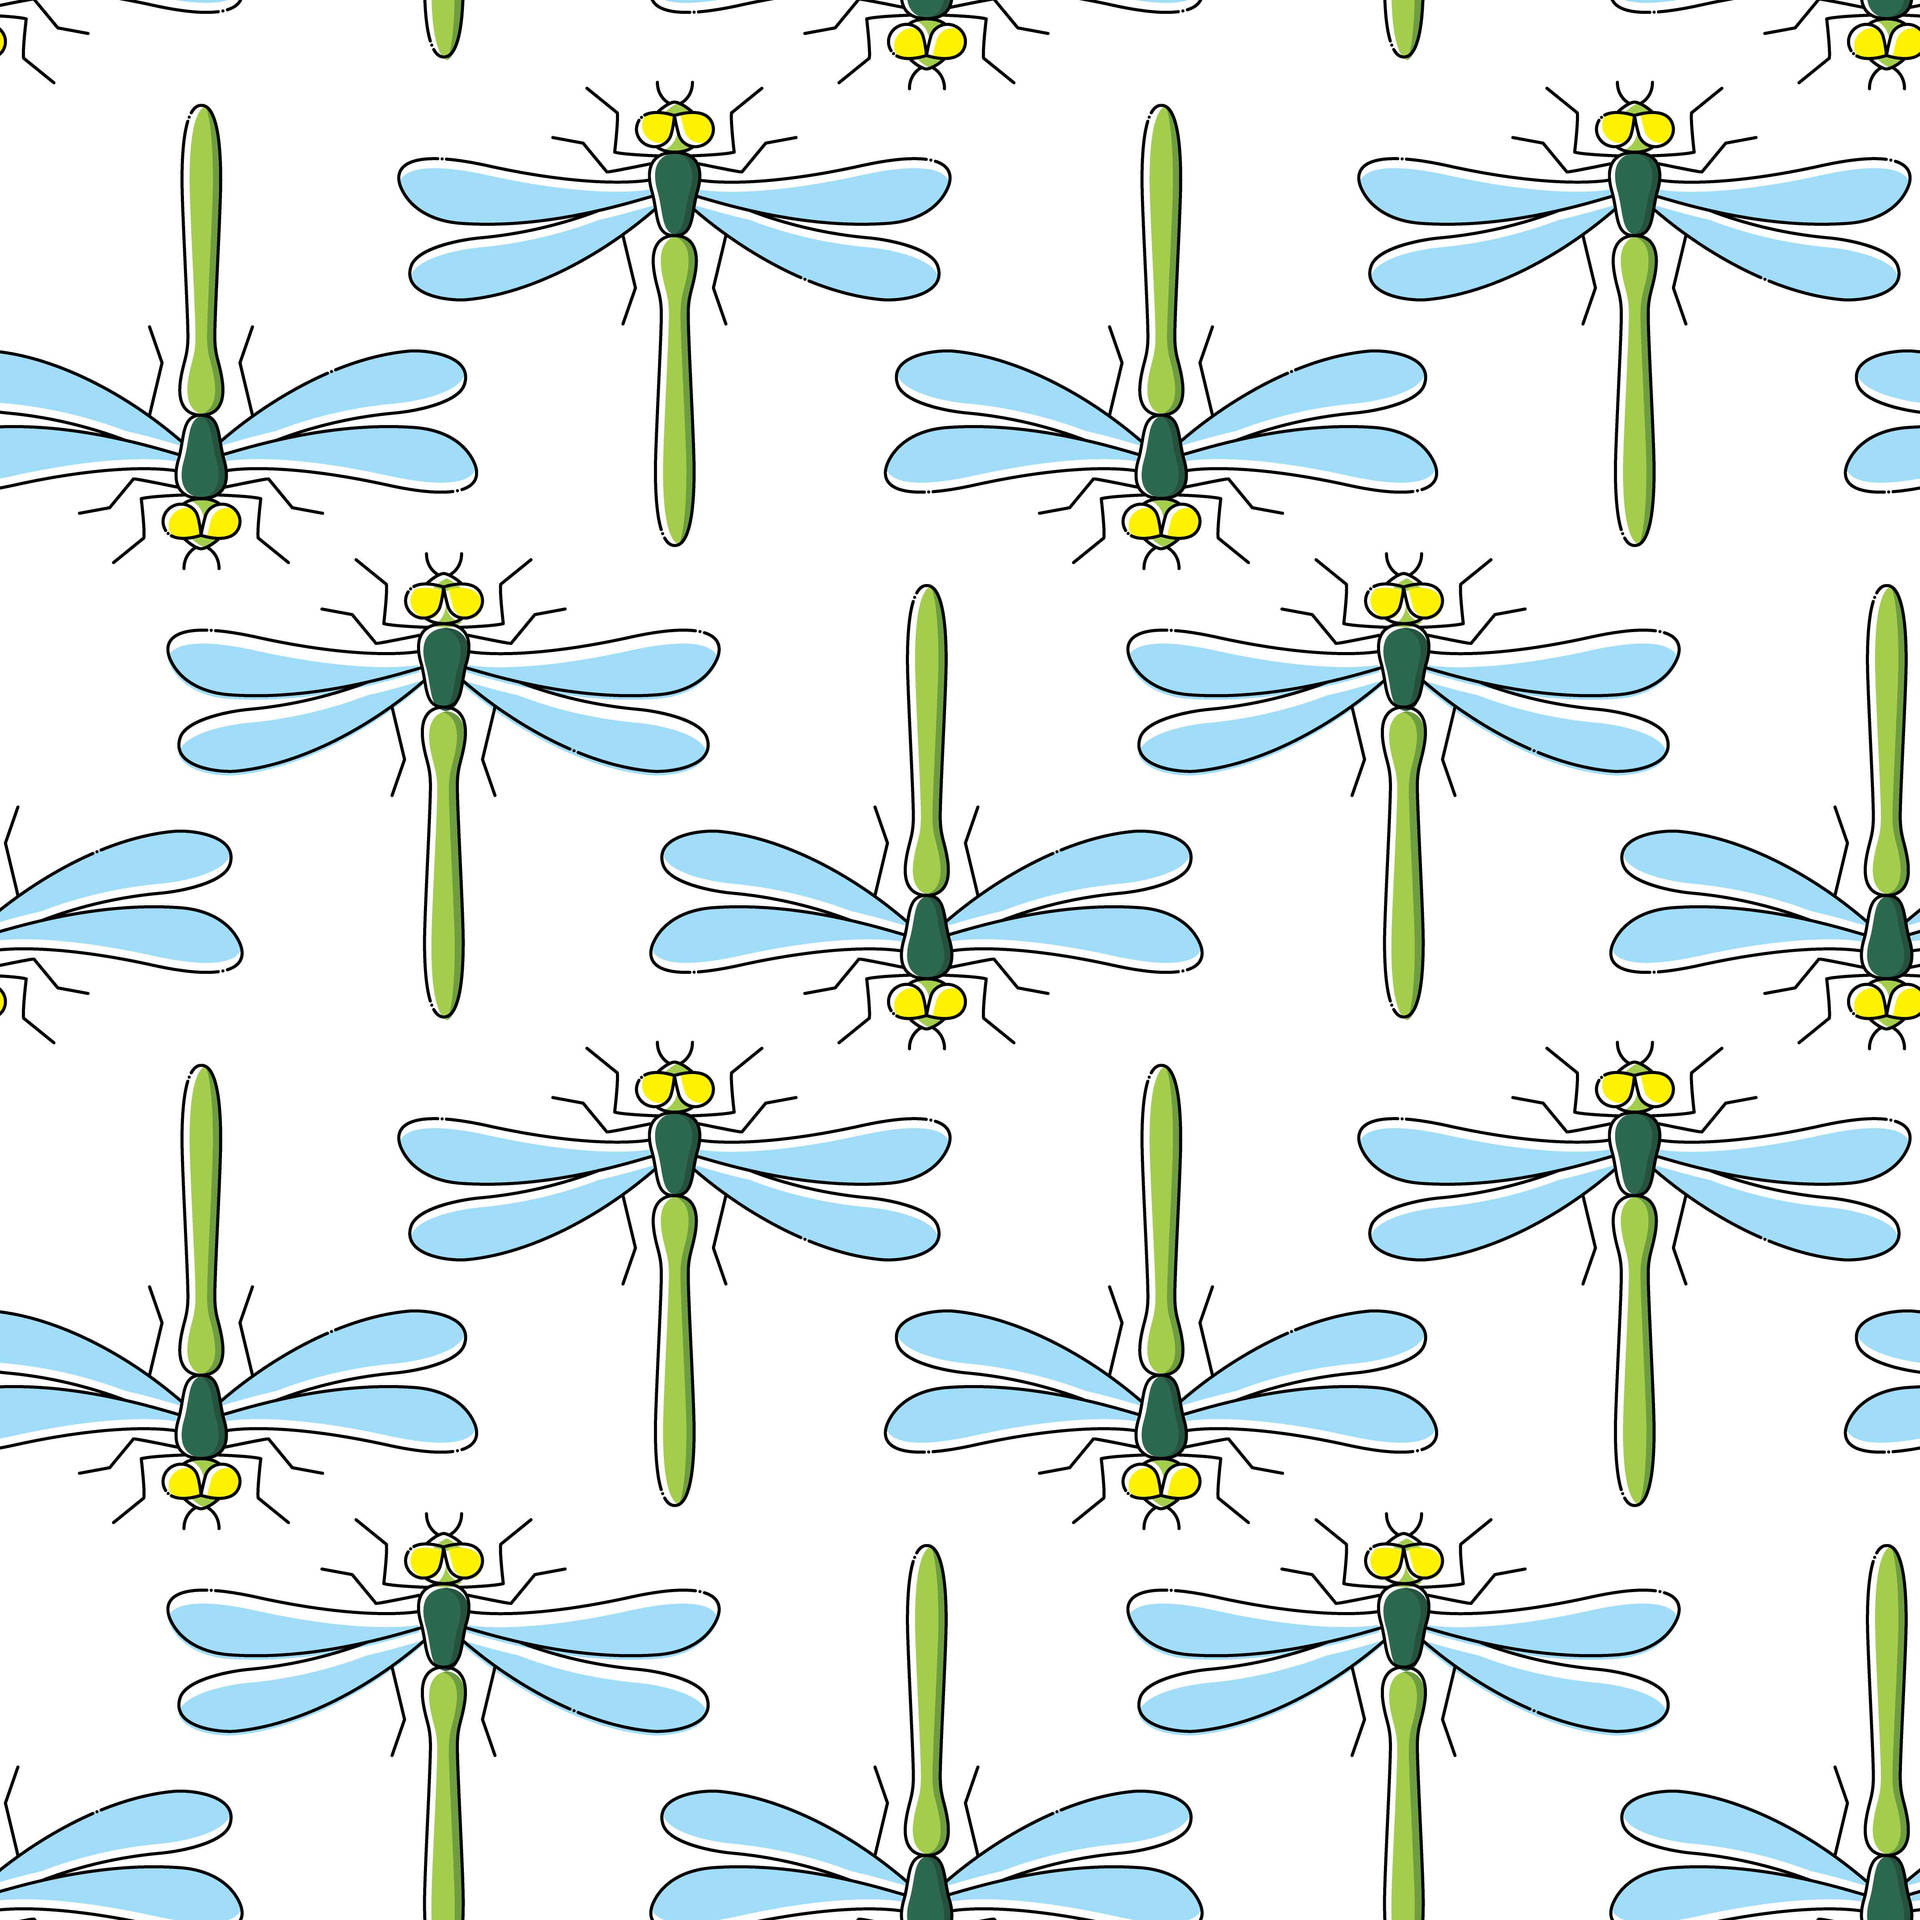 Digital Dragonfly Pattern Wallpaper